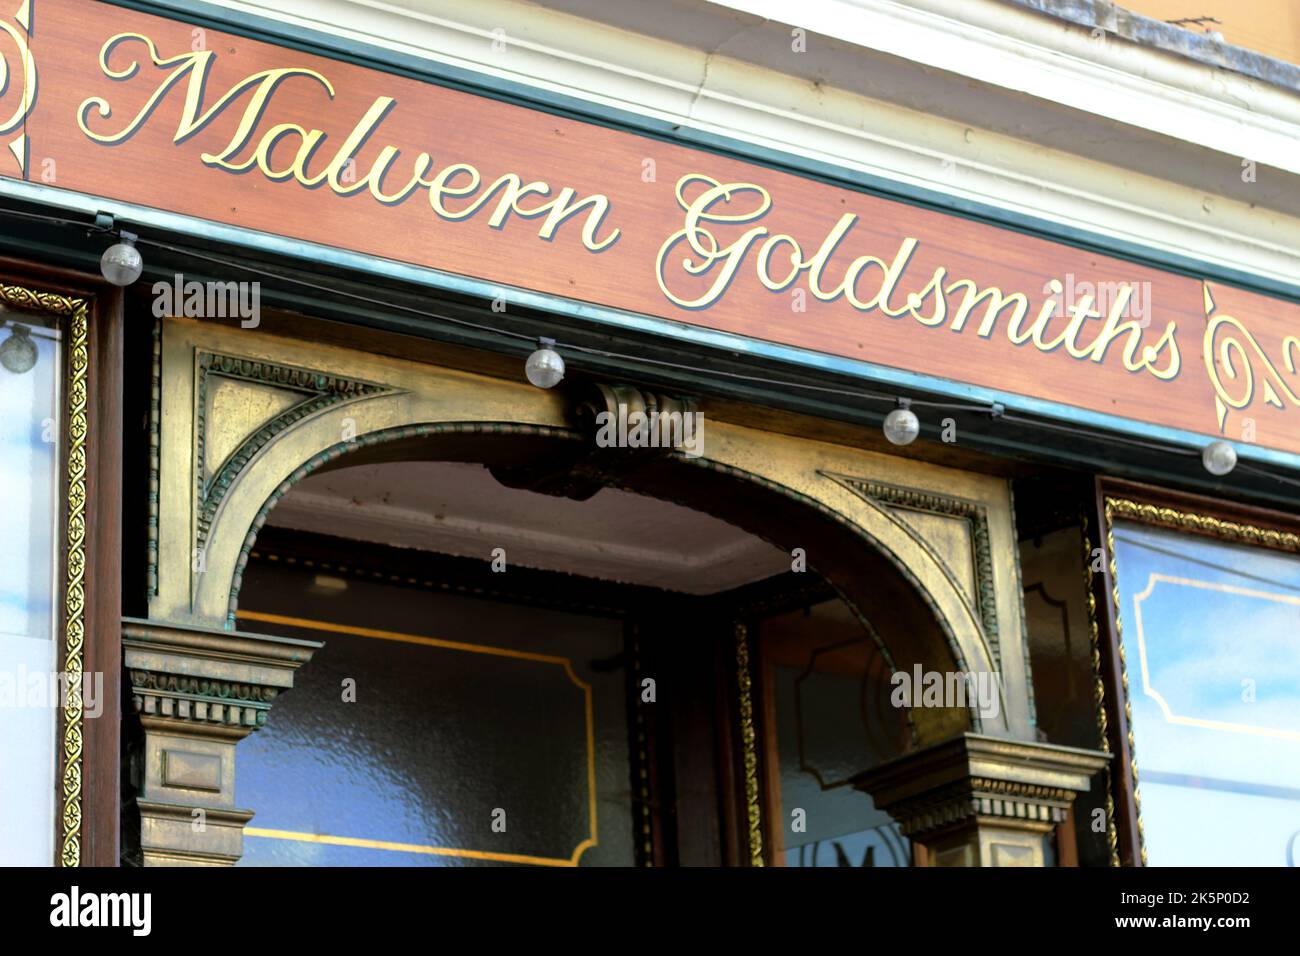 Malvern Goldsmiths grande ingresso a Great Malvern, Worcestershire - precedentemente il chimico gestito da Lea e Perrins di fama salsa Worcestershire Foto Stock